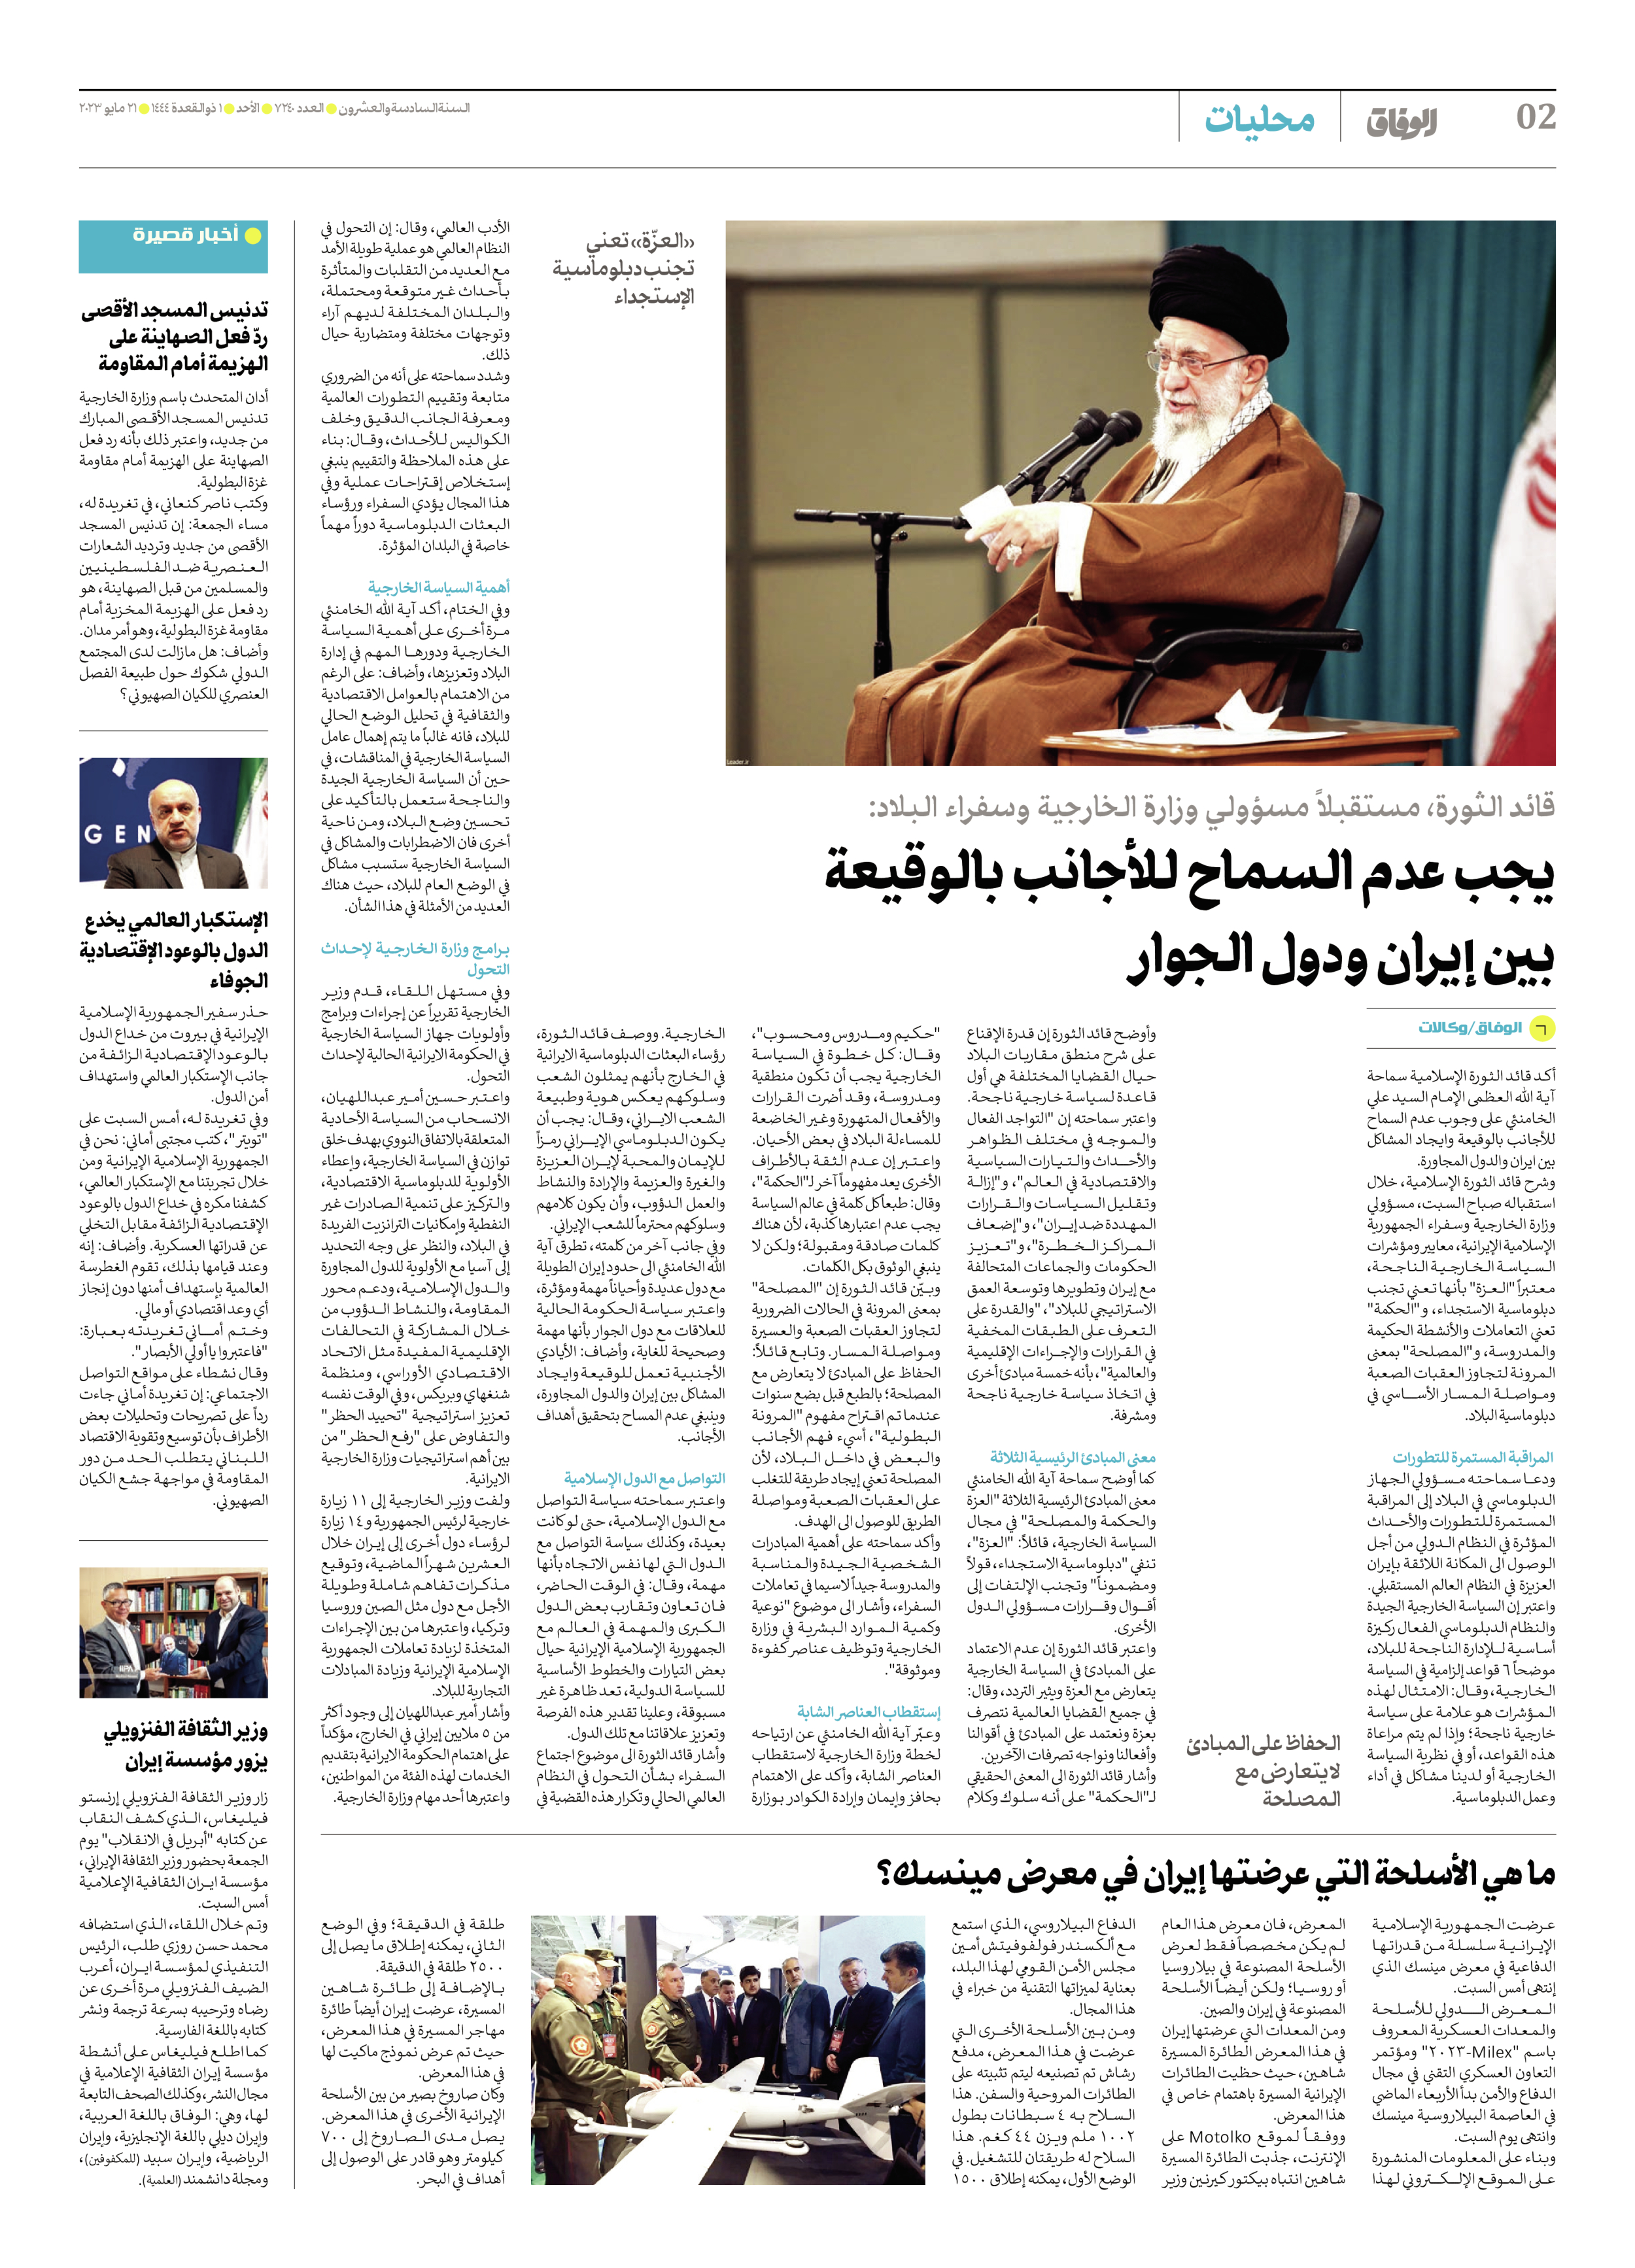 صحیفة ایران الدولیة الوفاق - العدد سبعة آلاف ومائتان وأربعون - ٢١ مايو ٢٠٢٣ - الصفحة ۲